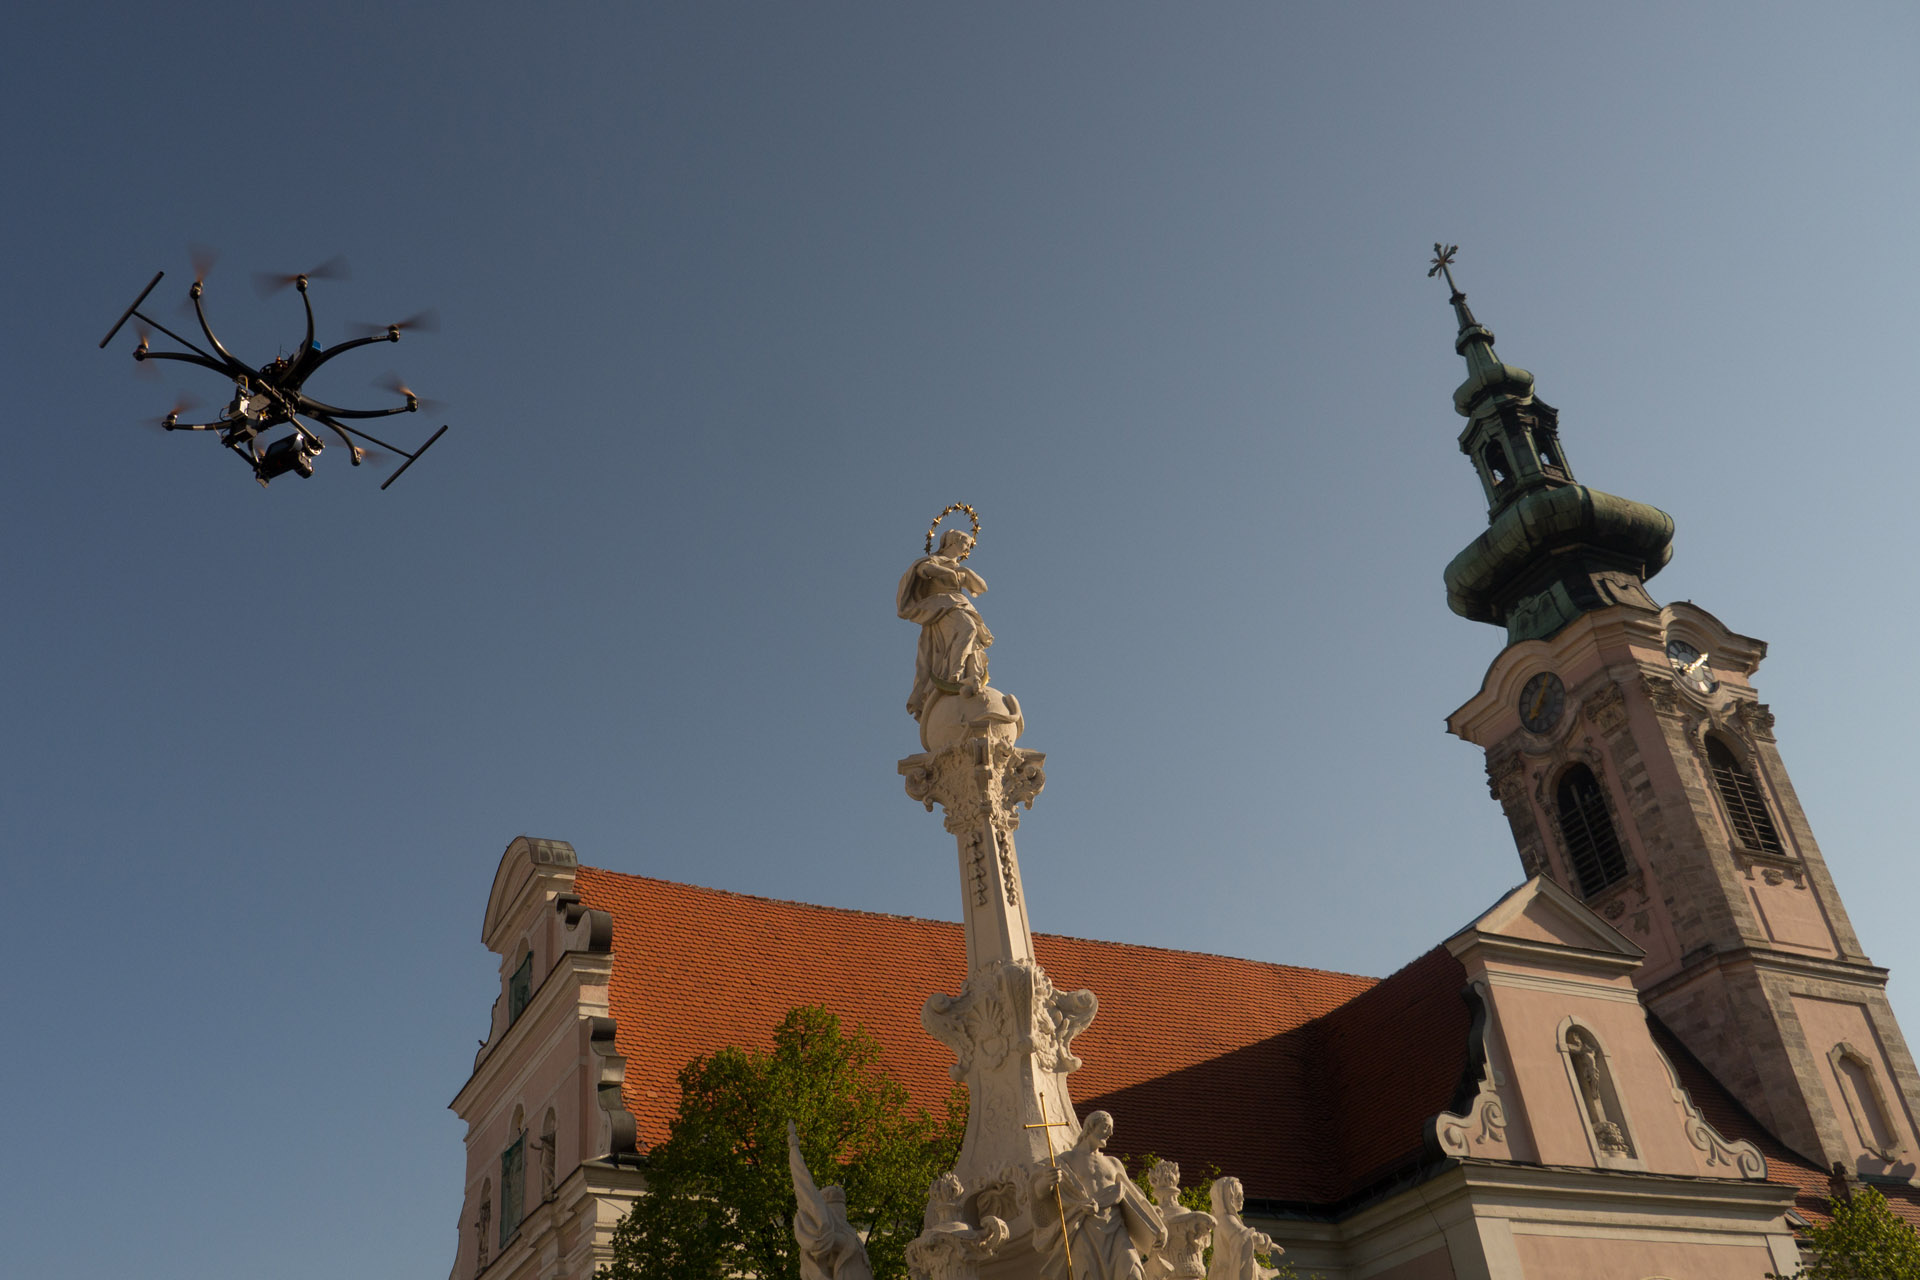 Österreichweit erster genehmigter Flug mit Drohne > 5 kg im städtischen Bereich